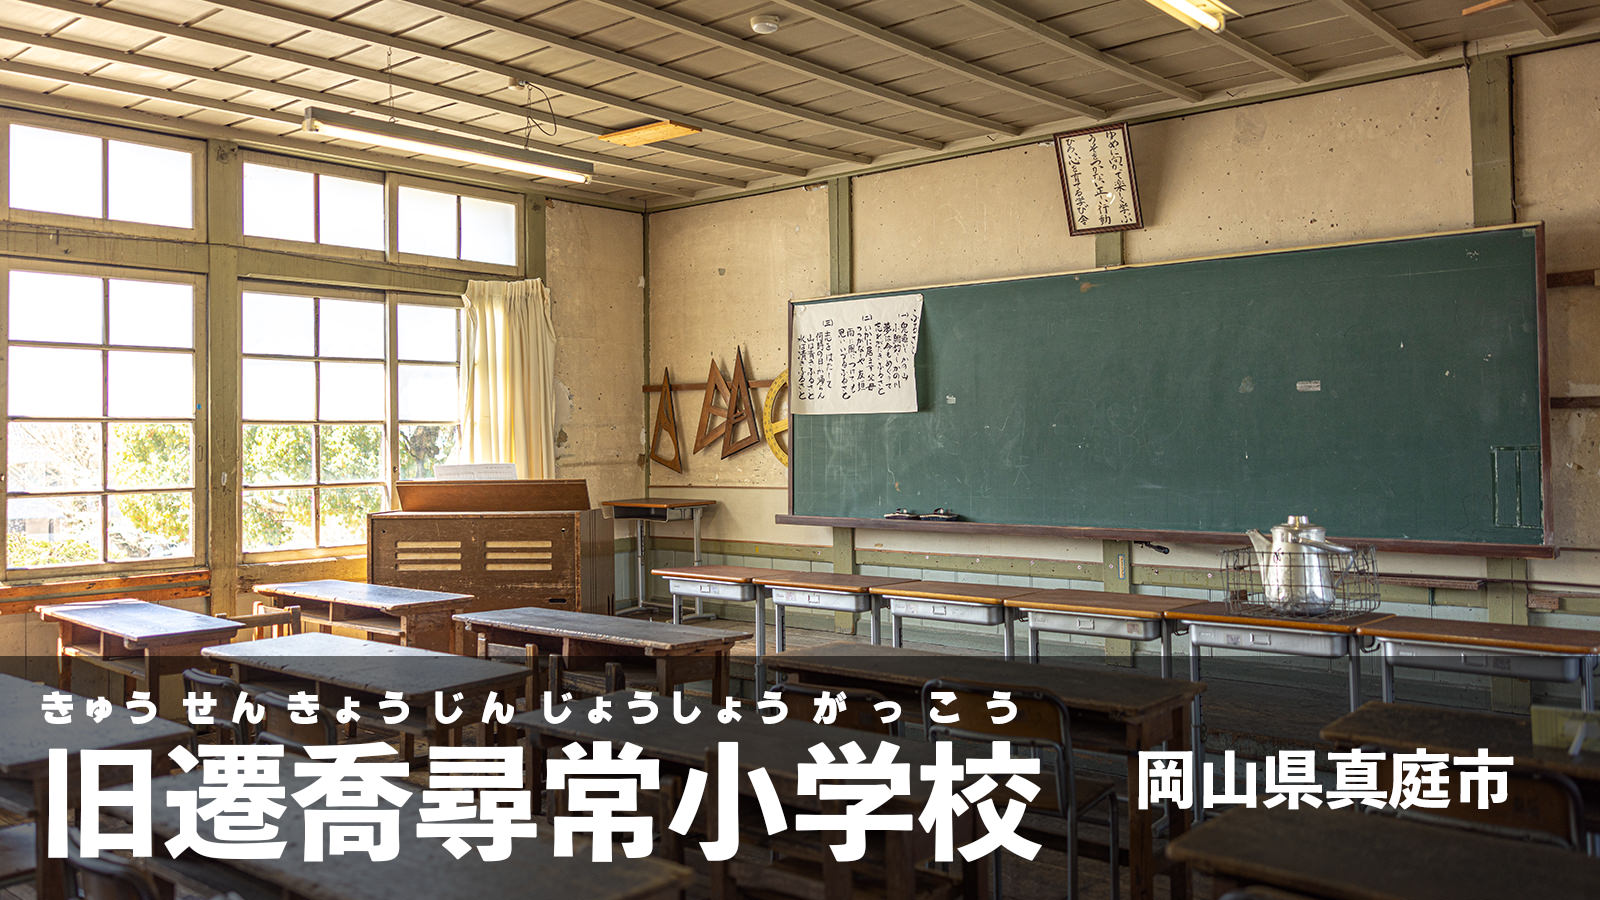 岡山県真庭市にある歴史的建築「旧遷喬尋常小学校舎」のフリー素材 - ぱくたそ公式ブログ